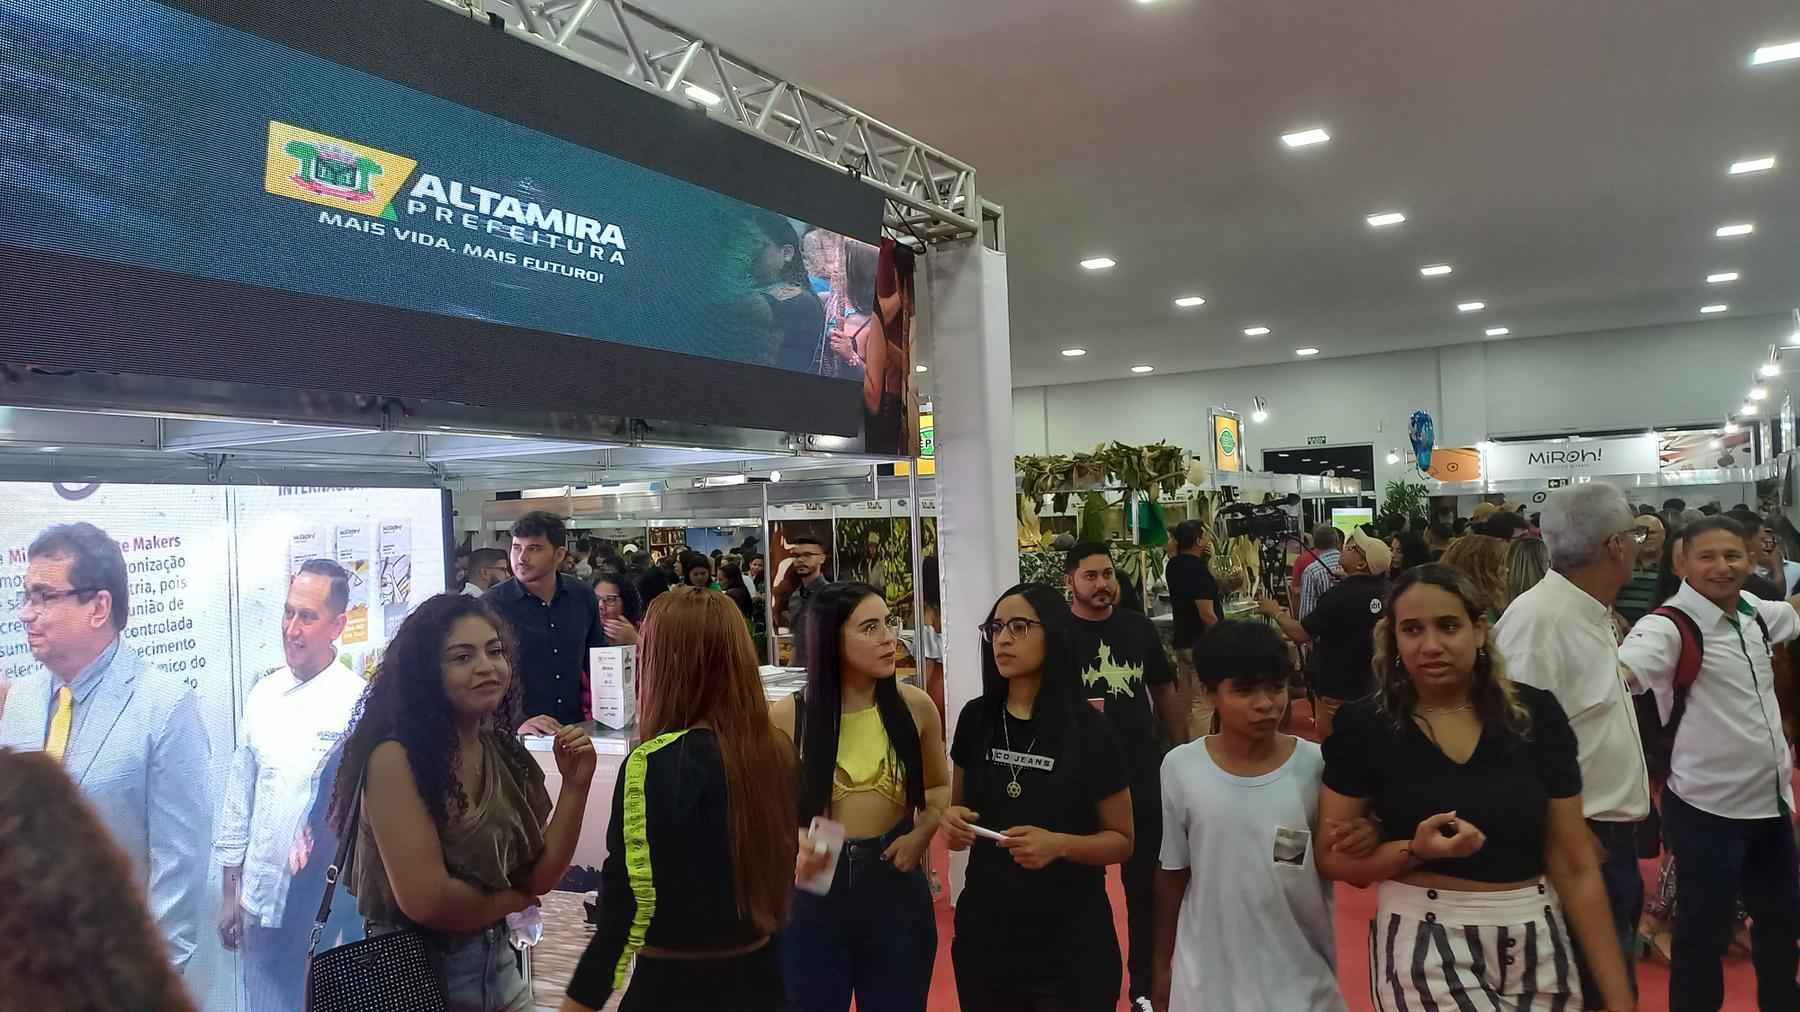 Festival de chocolate projeta Altamira como destino turístico no Pará - Carlos Altman/EM